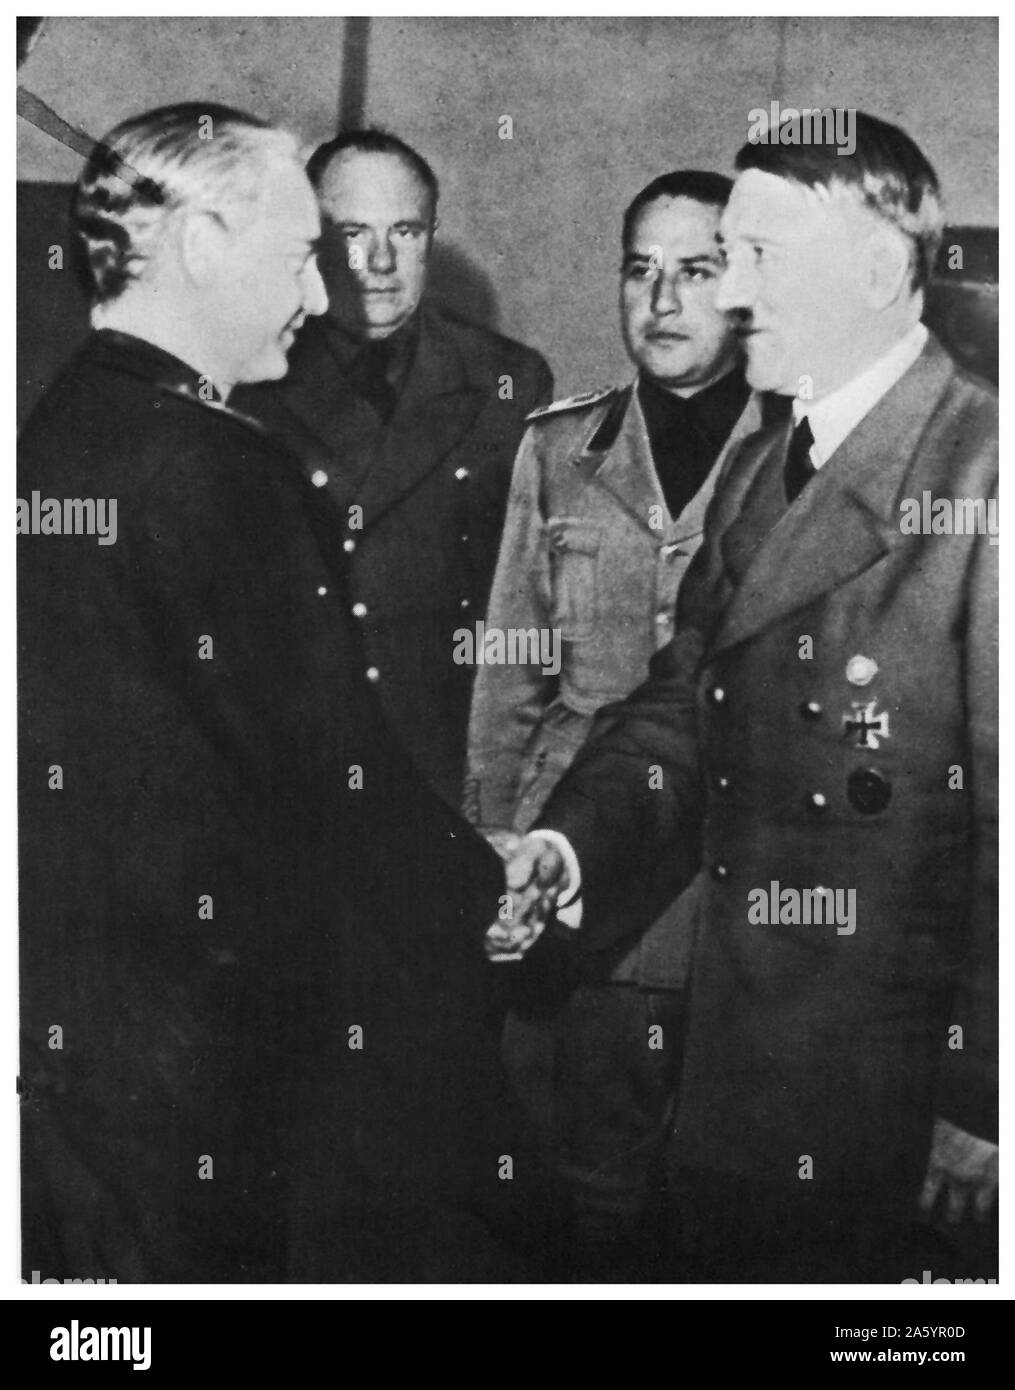 In ottobre 1940, Serrano Suñer, il Ministro degli esteri spagnolo si è incontrato con leader tedesco, Adolf Hitler, nel sud della Francia (Hendaye) per discutere avendo la Spagna partecipa nella II Guerra Mondiale Foto Stock